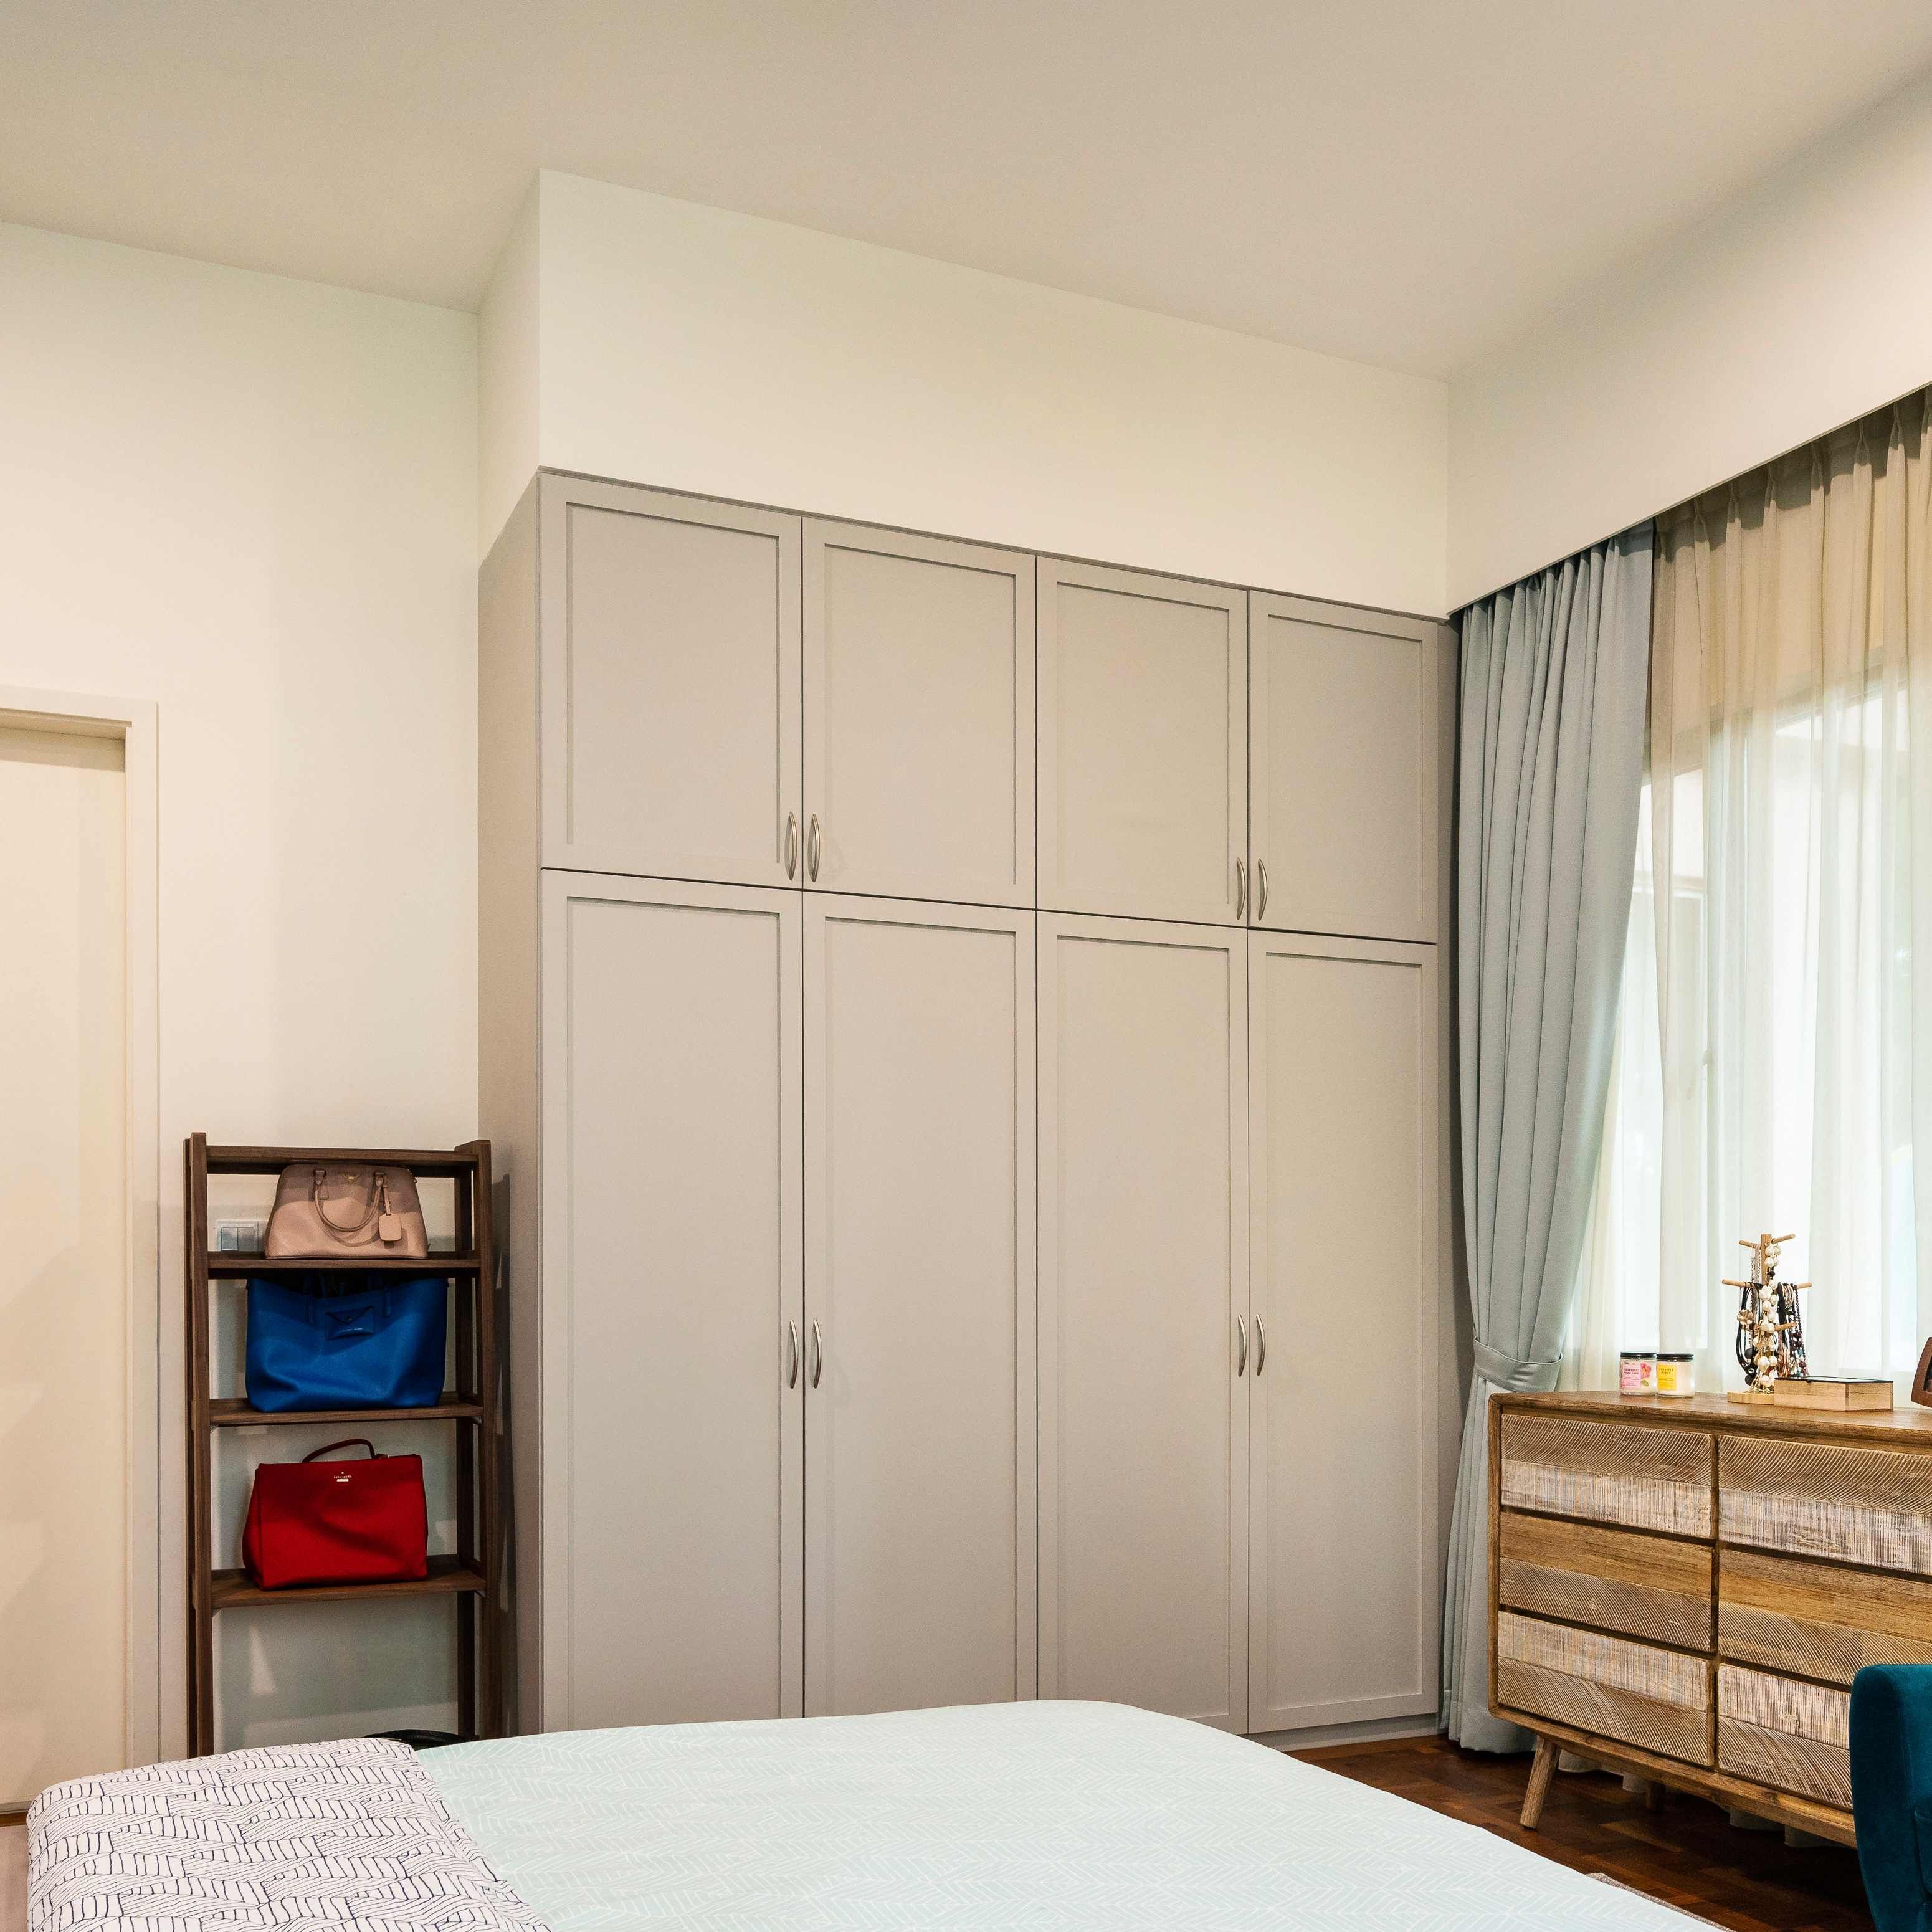 4-Door Grey Wardrobe Design For Modern Bedrooms